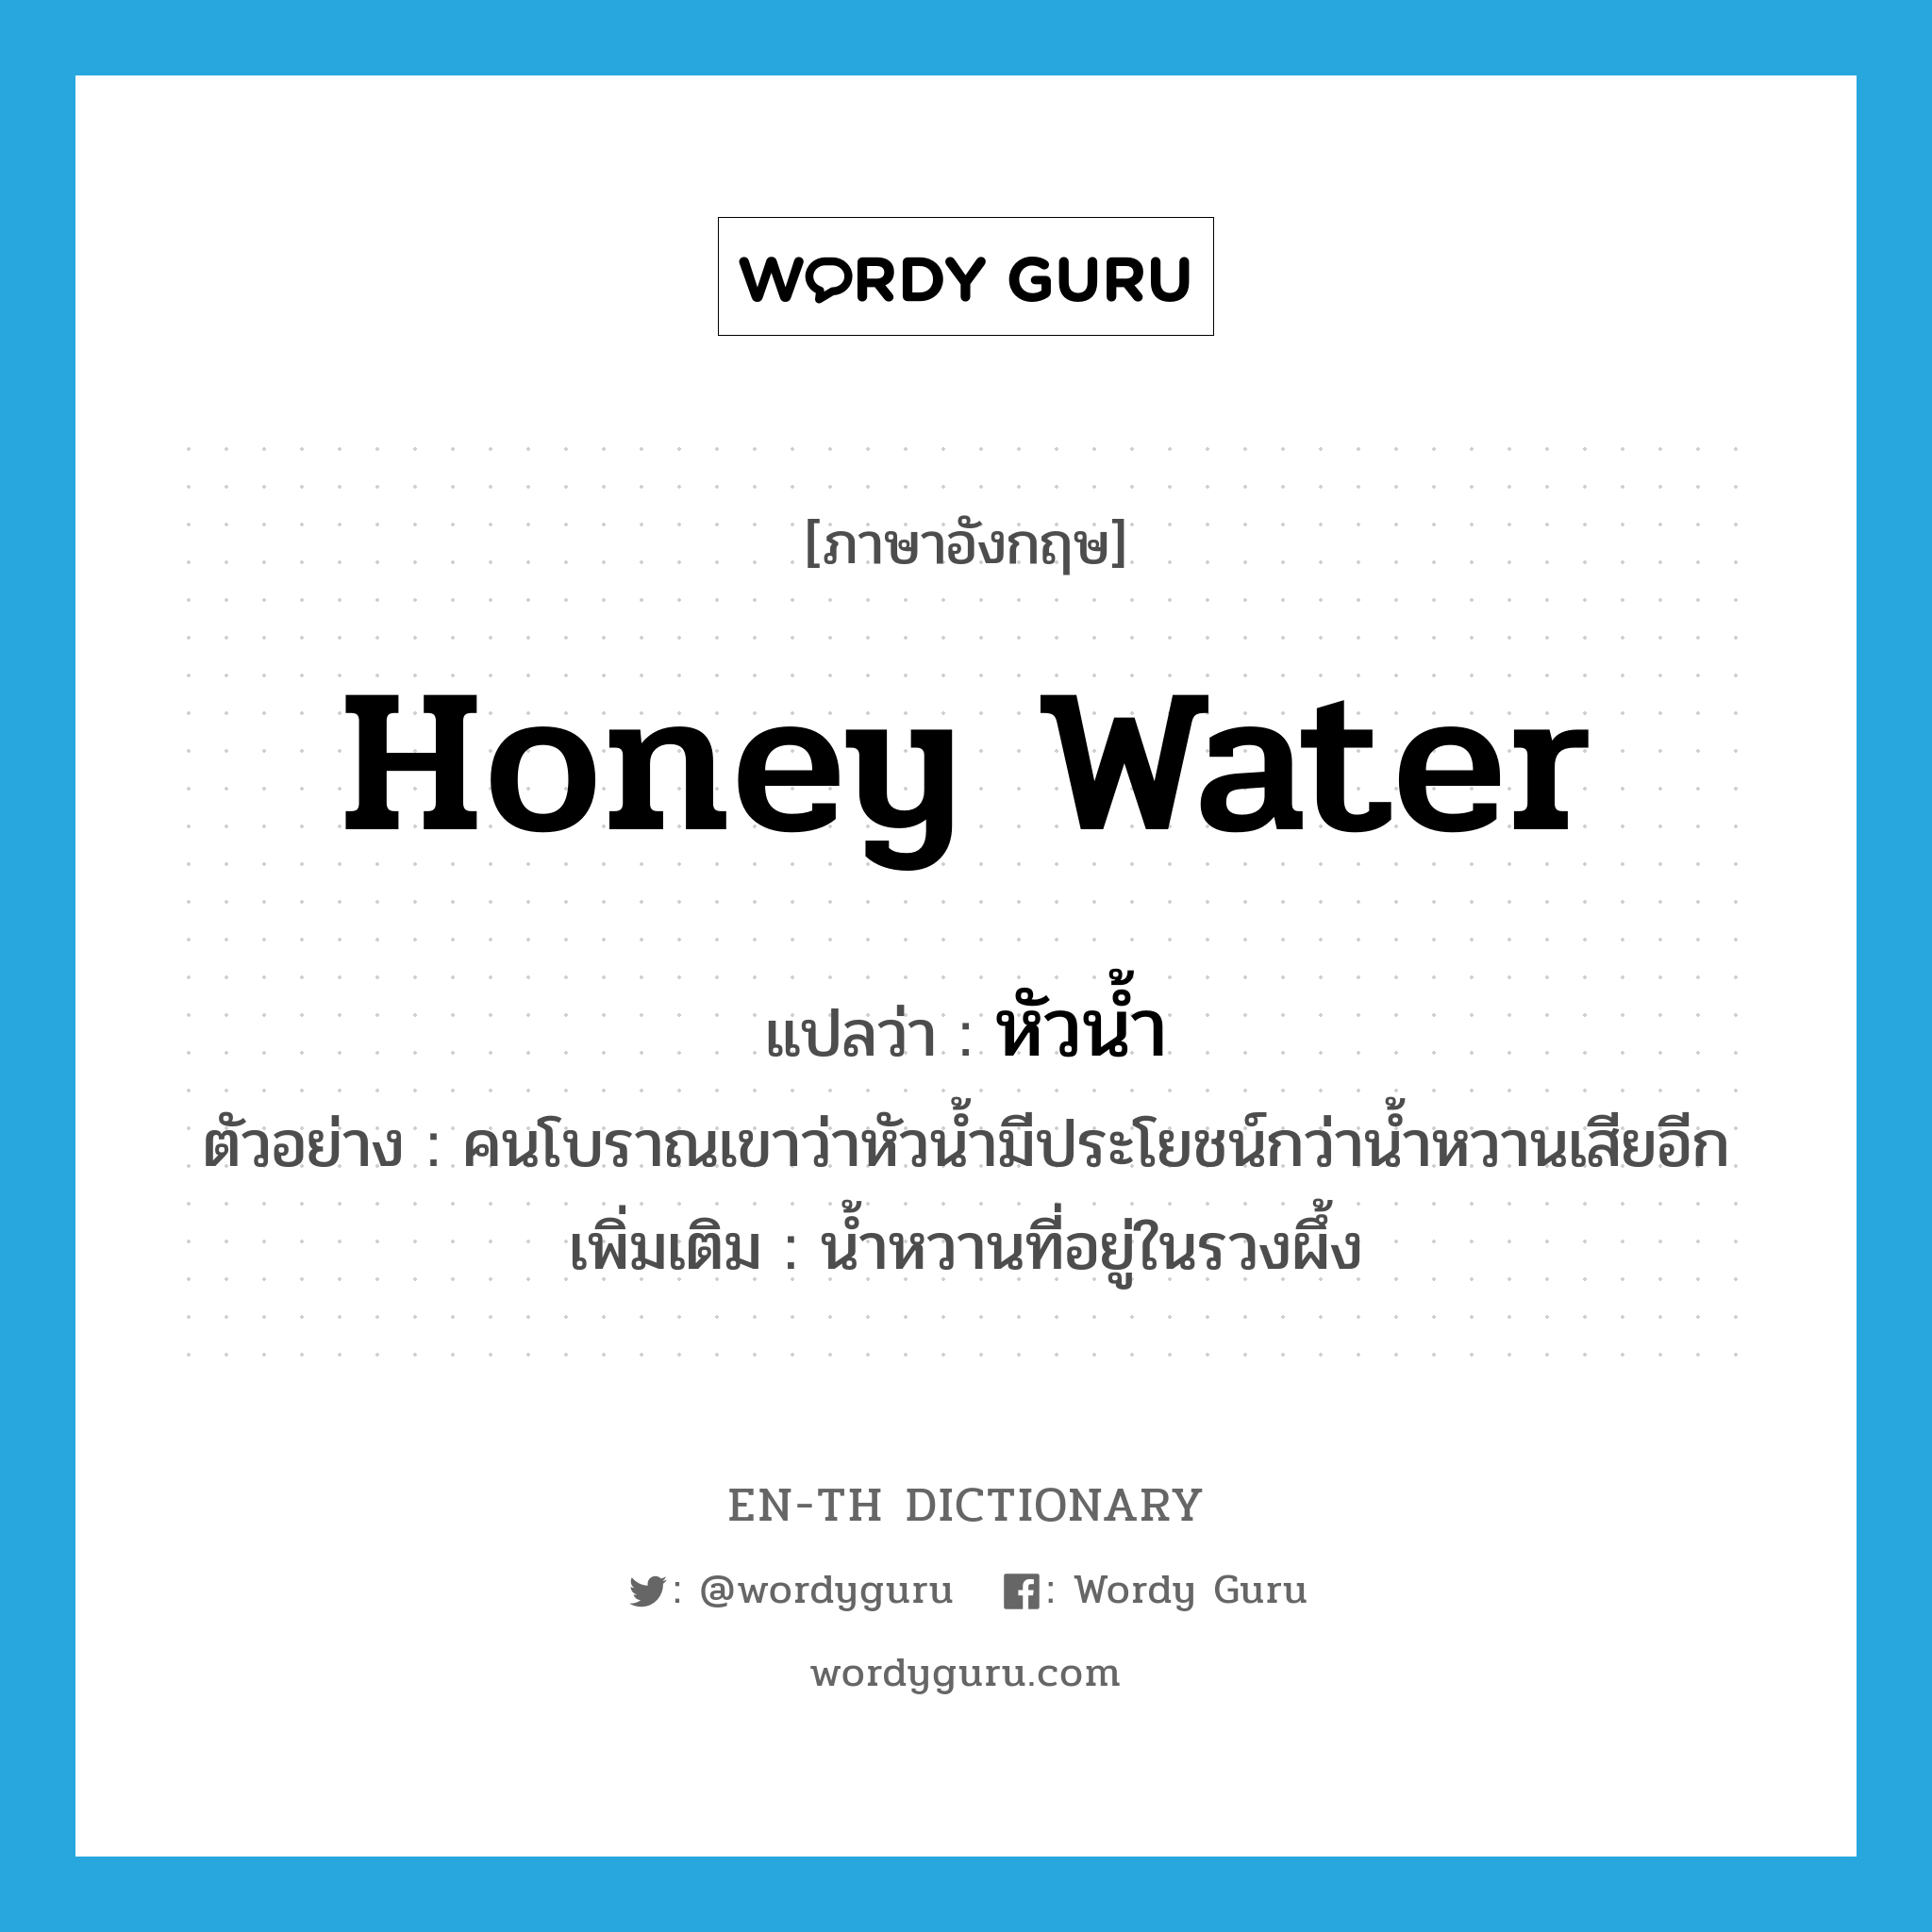 หัวน้ำ ภาษาอังกฤษ?, คำศัพท์ภาษาอังกฤษ หัวน้ำ แปลว่า honey water ประเภท N ตัวอย่าง คนโบราณเขาว่าหัวน้ำมีประโยชน์กว่าน้ำหวานเสียอีก เพิ่มเติม น้ำหวานที่อยู่ในรวงผึ้ง หมวด N